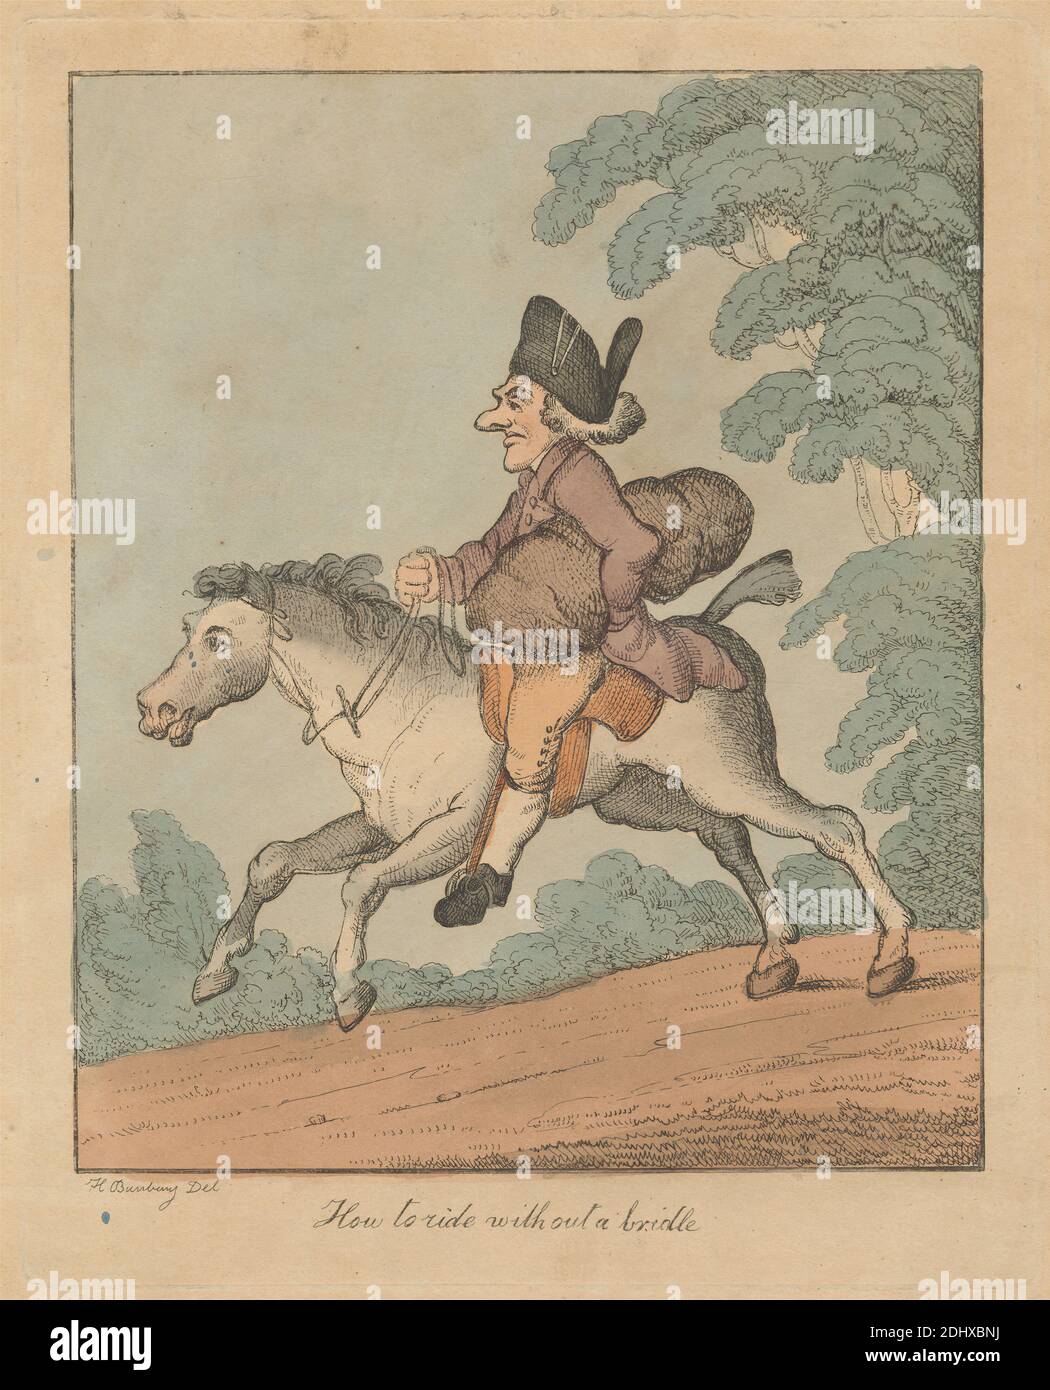 Comment faire sans bride, imprimé par Henry William Bunbury, 1750–1811, British, non daté, gravure de couleur main sur carte beige épaisse, feuille: 12 1/2 x 9 5/8 pouces (31.7 x 24.5 cm), plaque: 9 15/16 x 7 15/16 pouces (25.2 x 20.2 cm), et image: 8 11/16 x 7 3/16 pouces (22 x 18.2 cm), bride, paquet, caricature, manteau, sujet de genre, chapeau, cheval (animal), homme, nez, équitation, route, selle, satire, arbres Banque D'Images